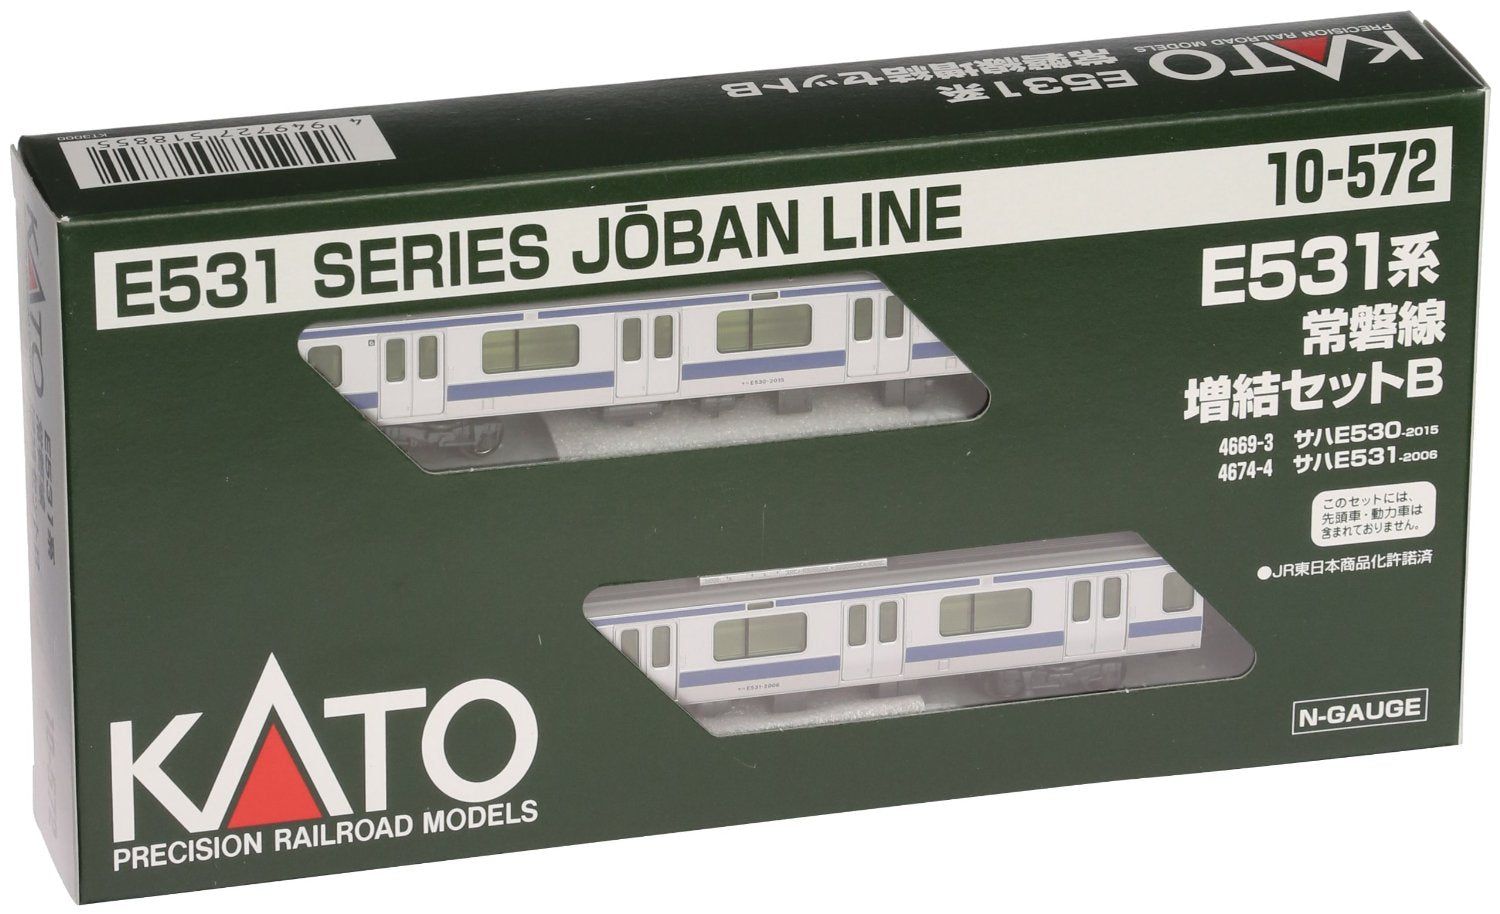 KATO 10-572 E531 Series Joban Line 2 Car Set - BanzaiHobby